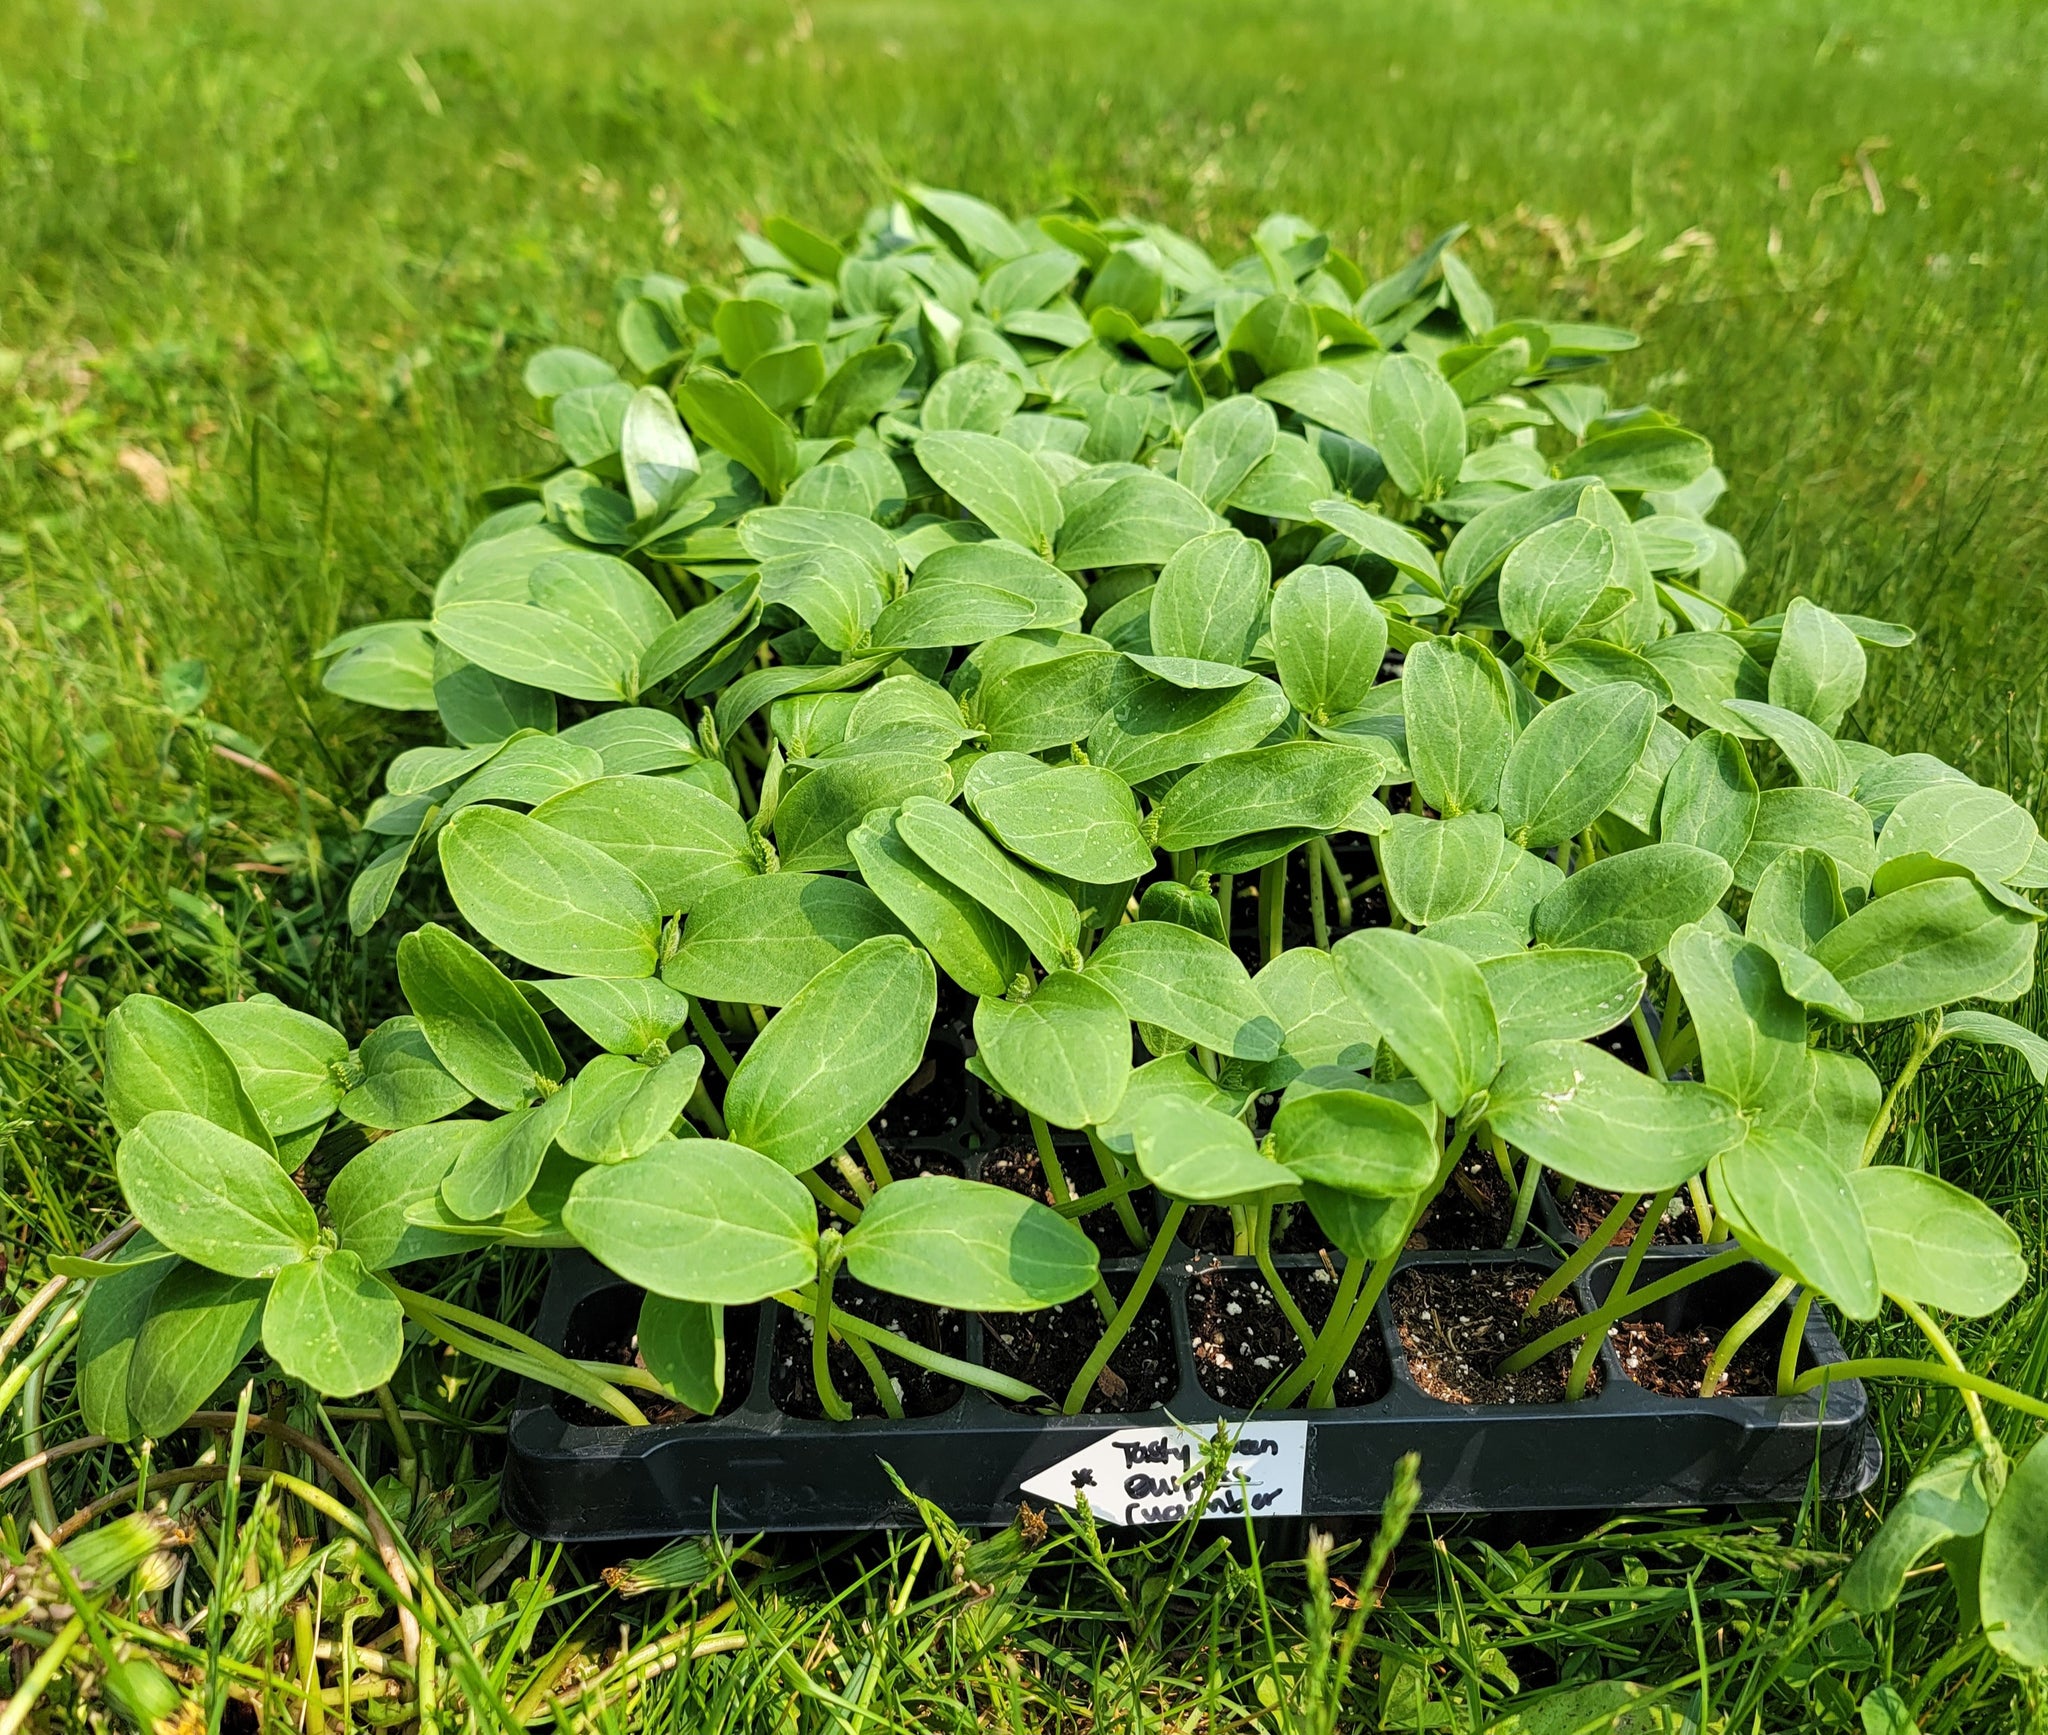 Burpless Tasty Green Hybrid Cucumber Starter Live Plants - 4 Seedlings